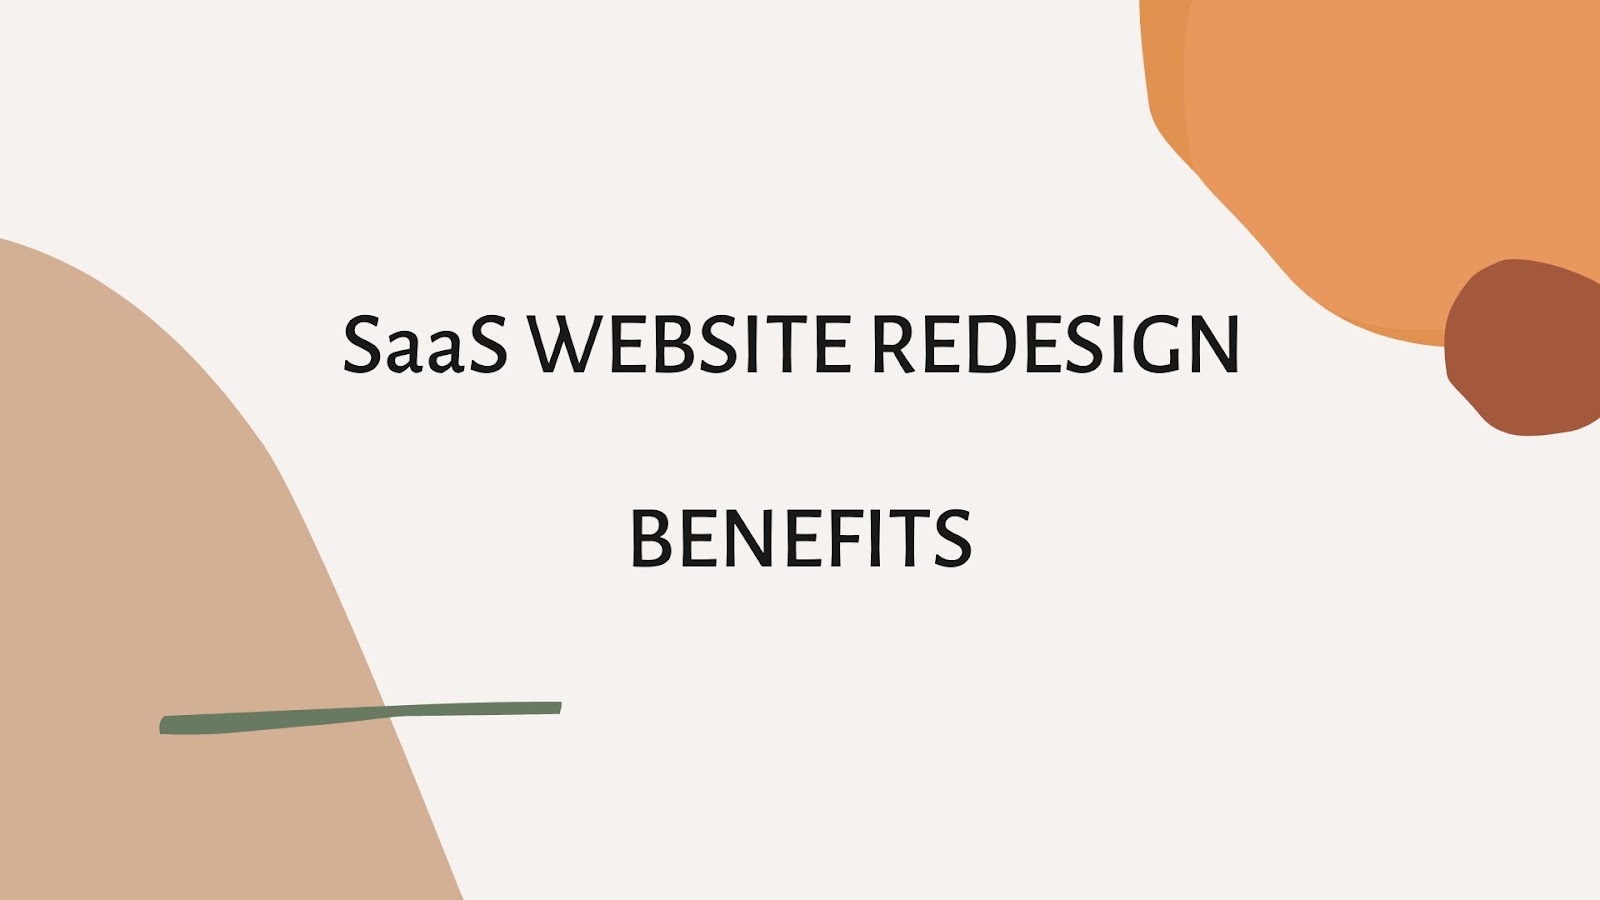 SaaS website redesign: benefits